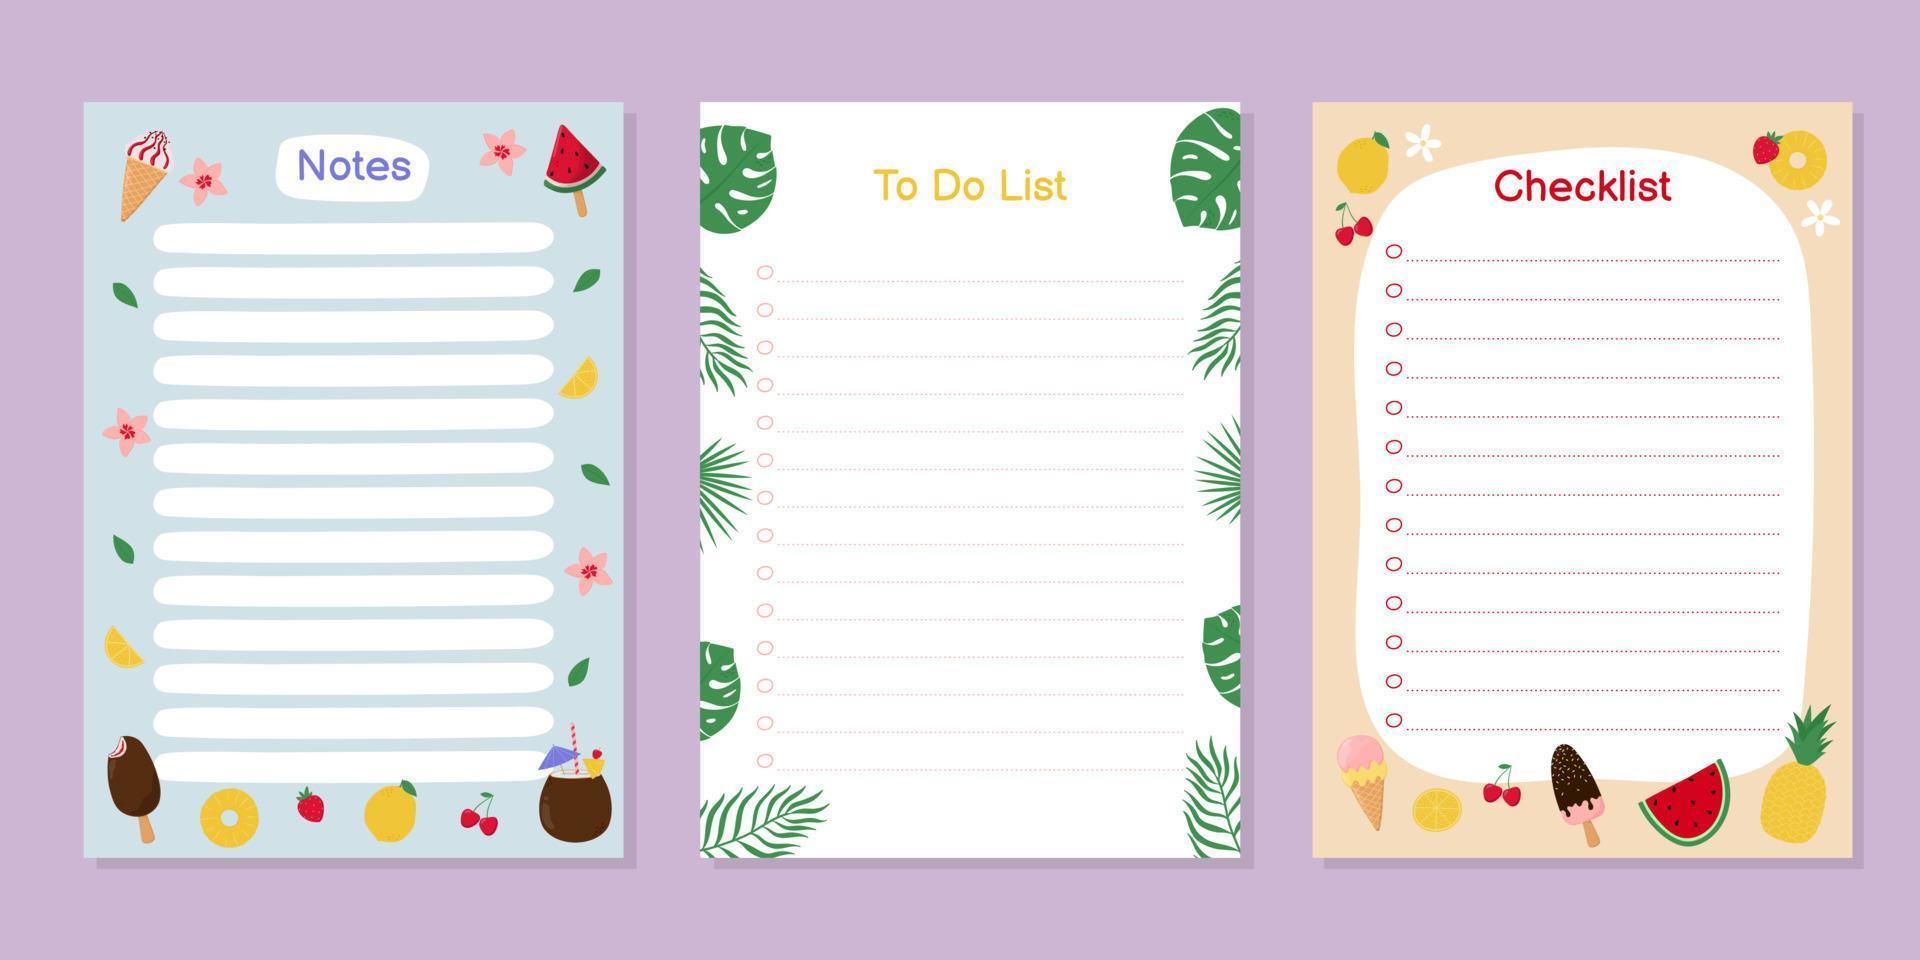 modelos para notas, lista de tarefas e checklist com objetos fofos de verão. sorvete colorido, frutas, bagas e folhas tropicais. vetor